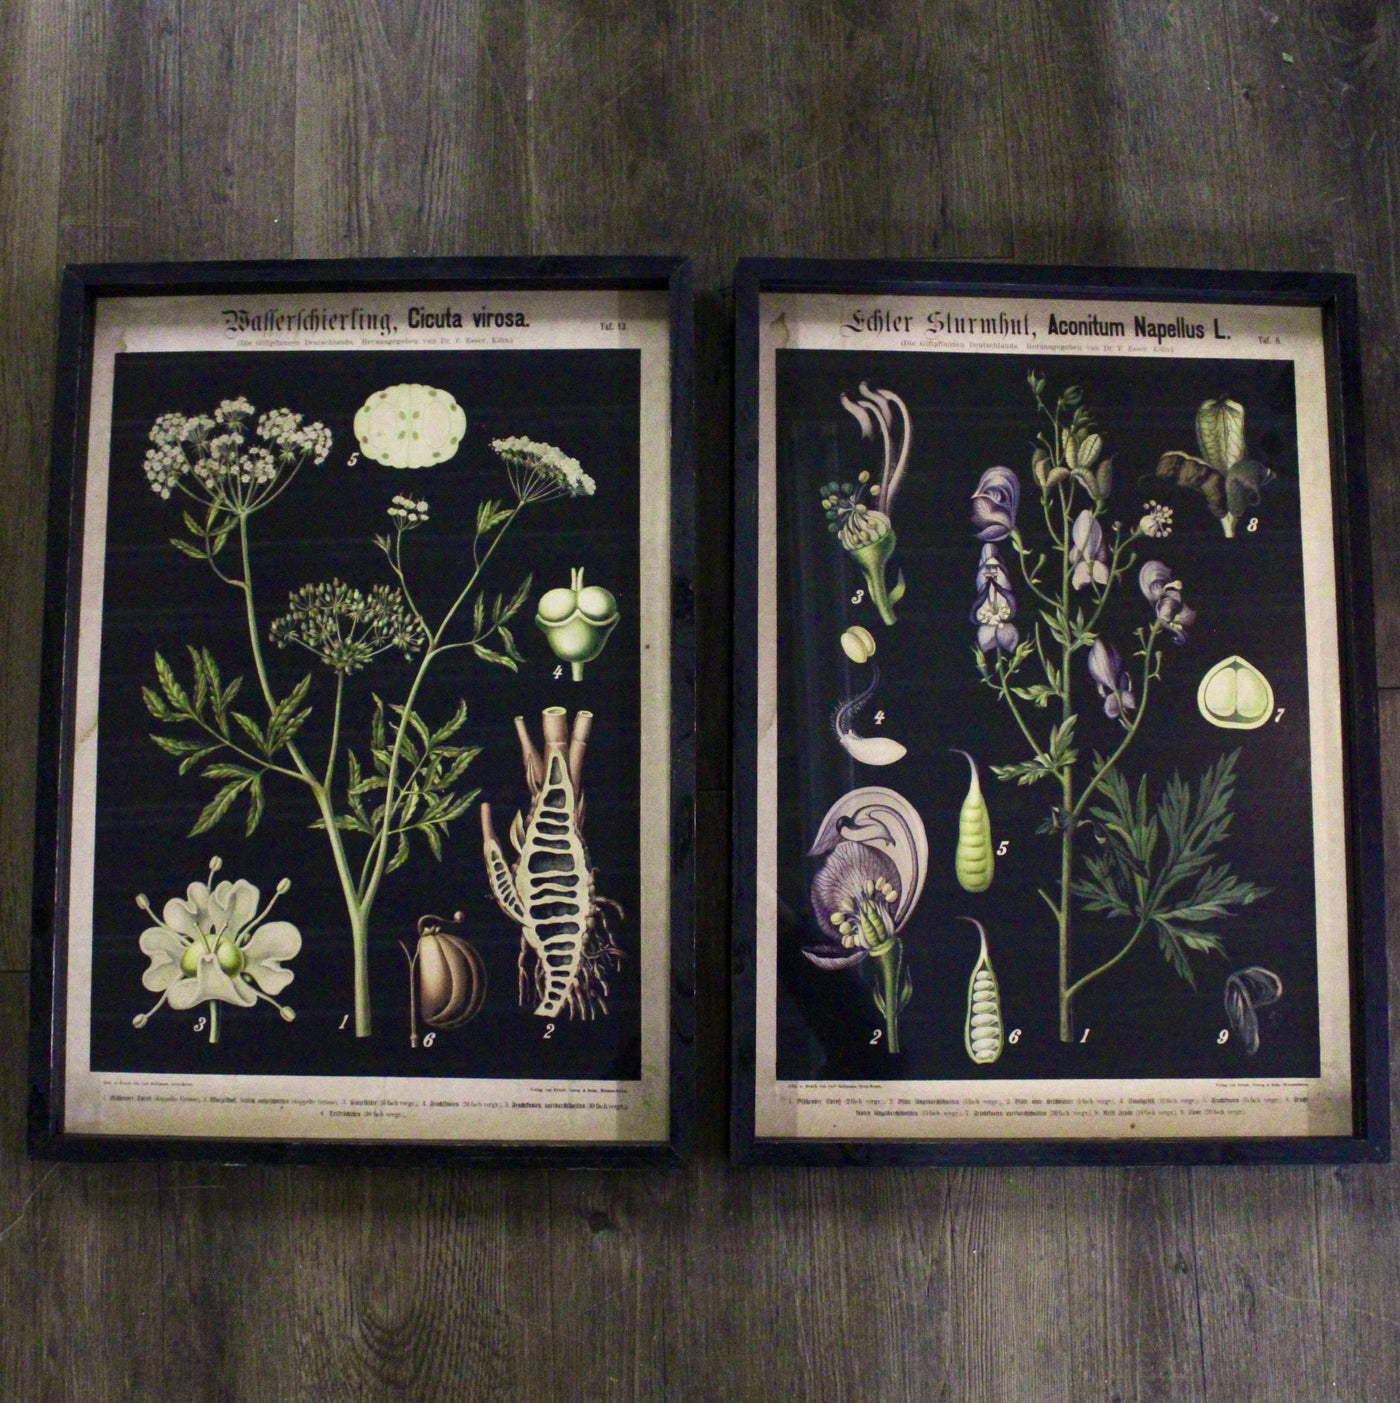 Framed Botanical Prints